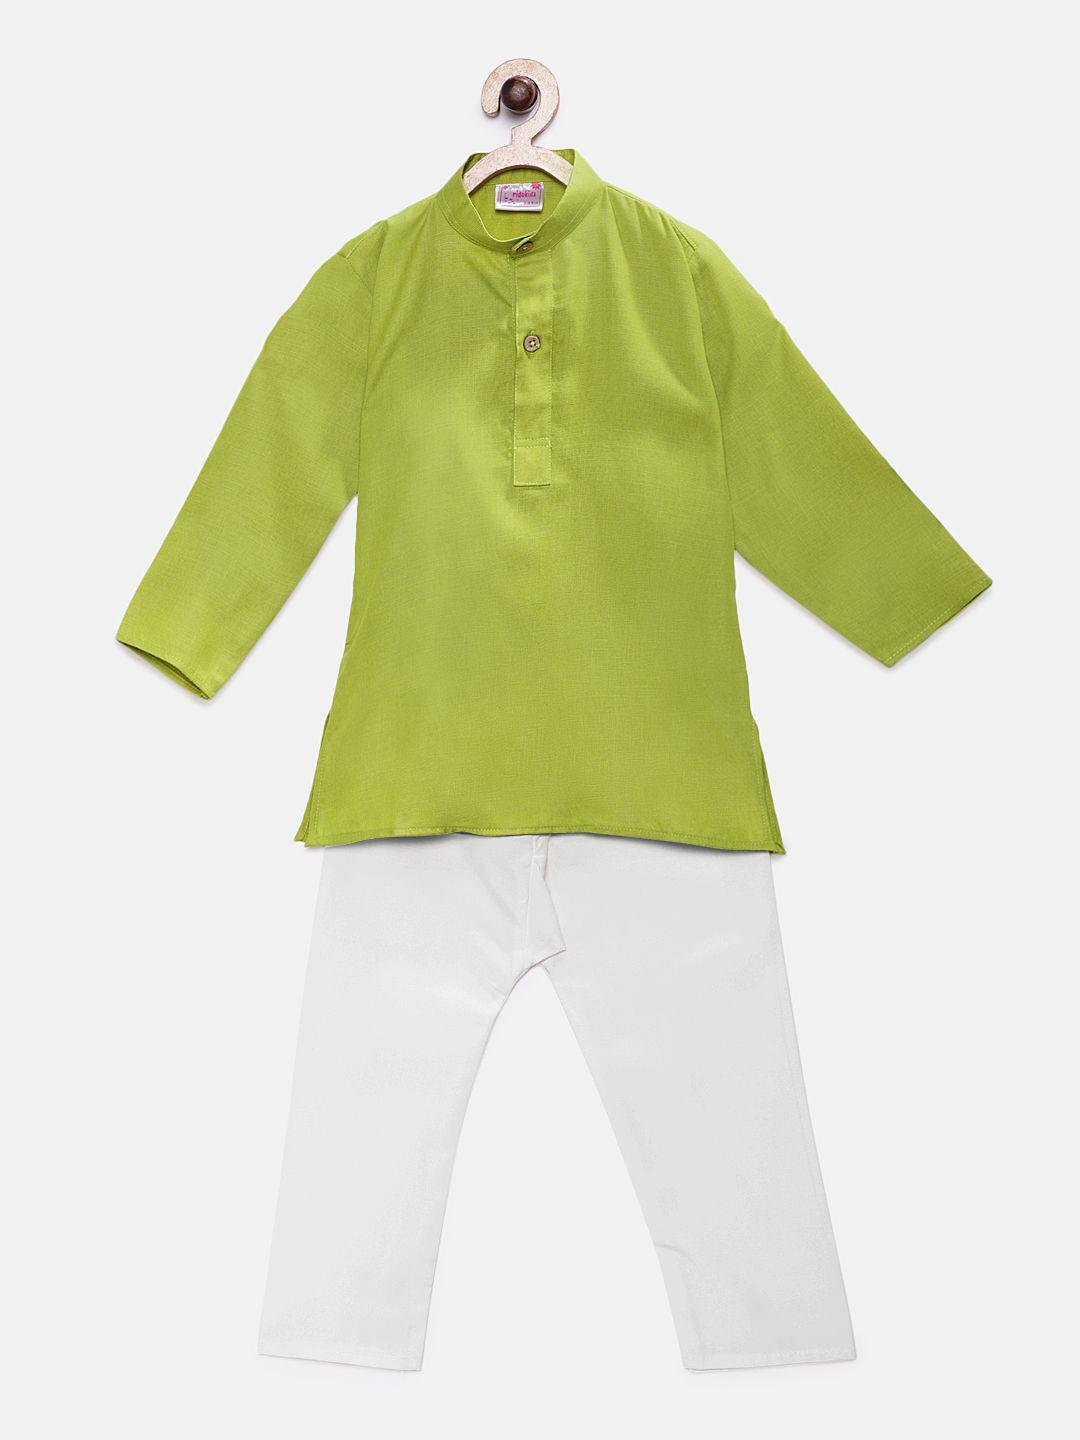 ridokidz boys green & white solid kurta with pyjamas